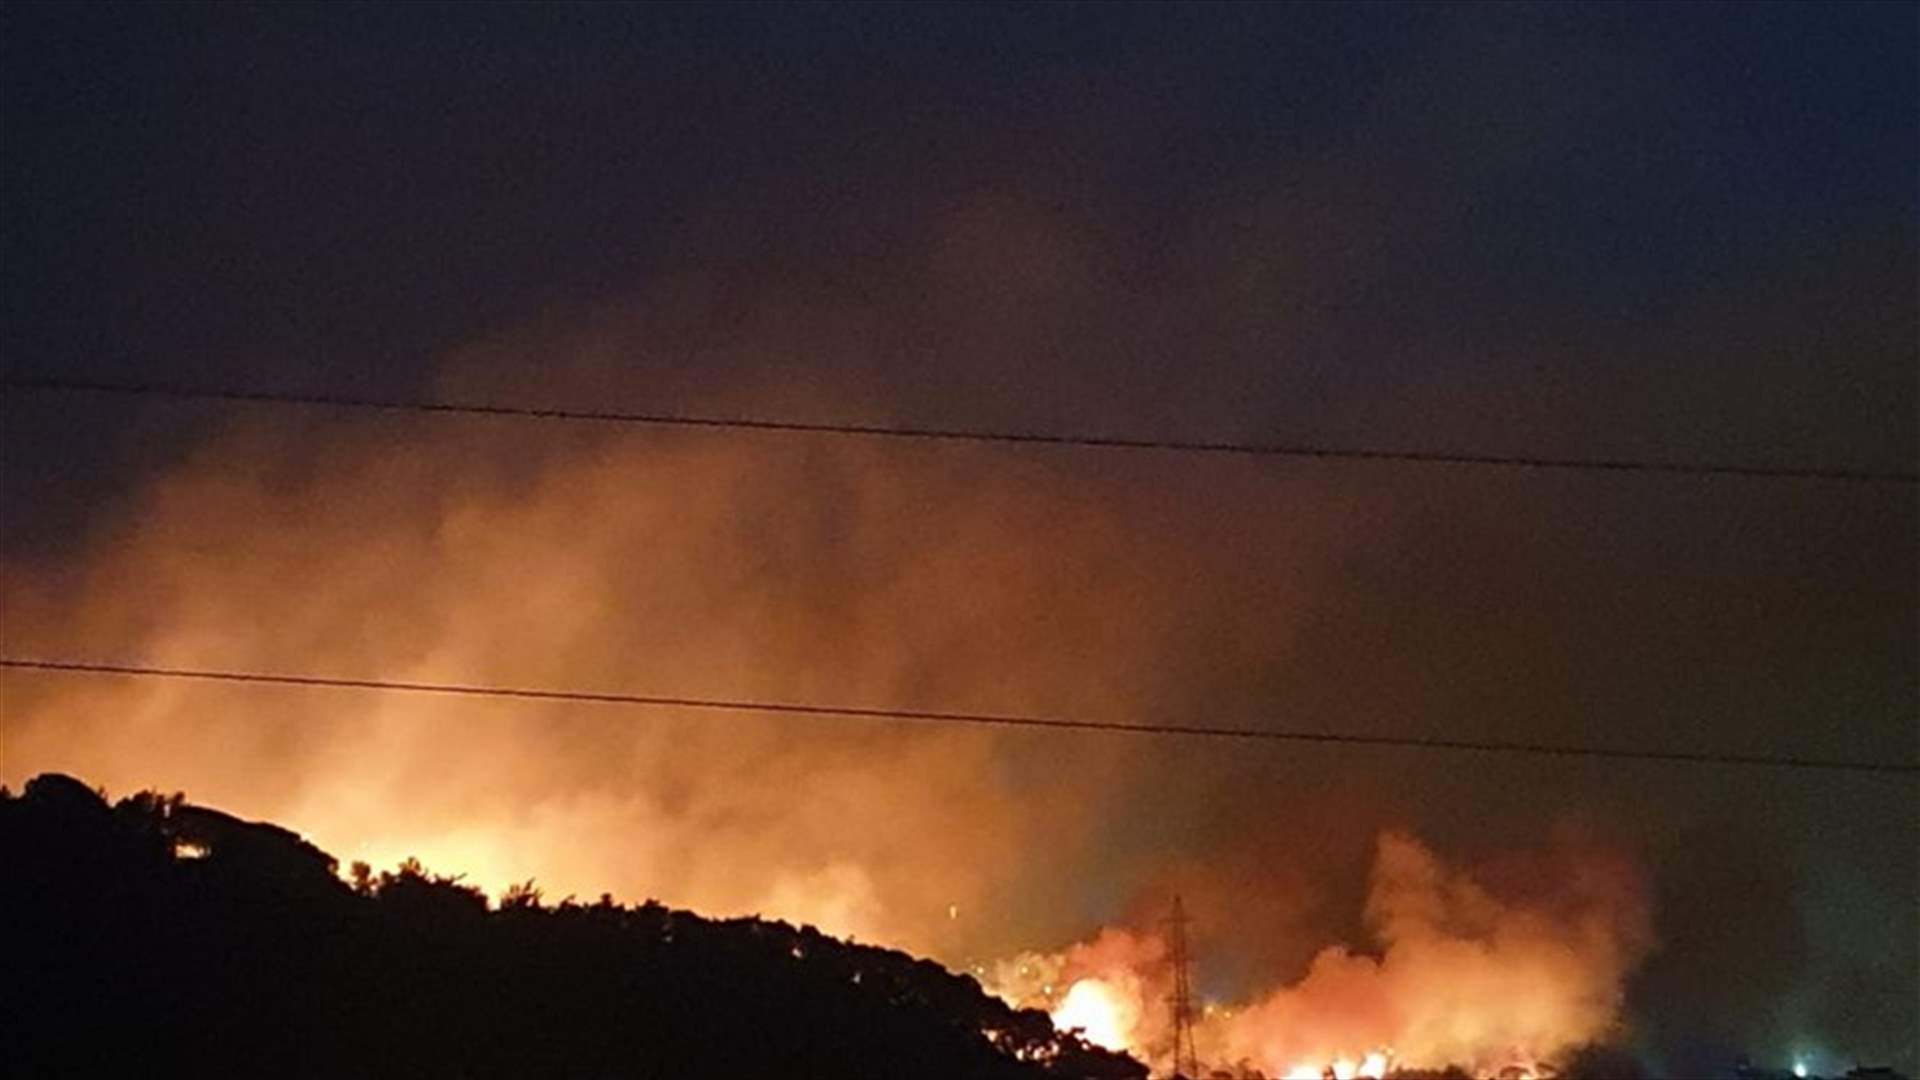 حريق كبير في أحراج القرنة الحمرا - مزرعة يشوع - زكريت ... والدفاع المدني يعمل على اخماده (فيديو)